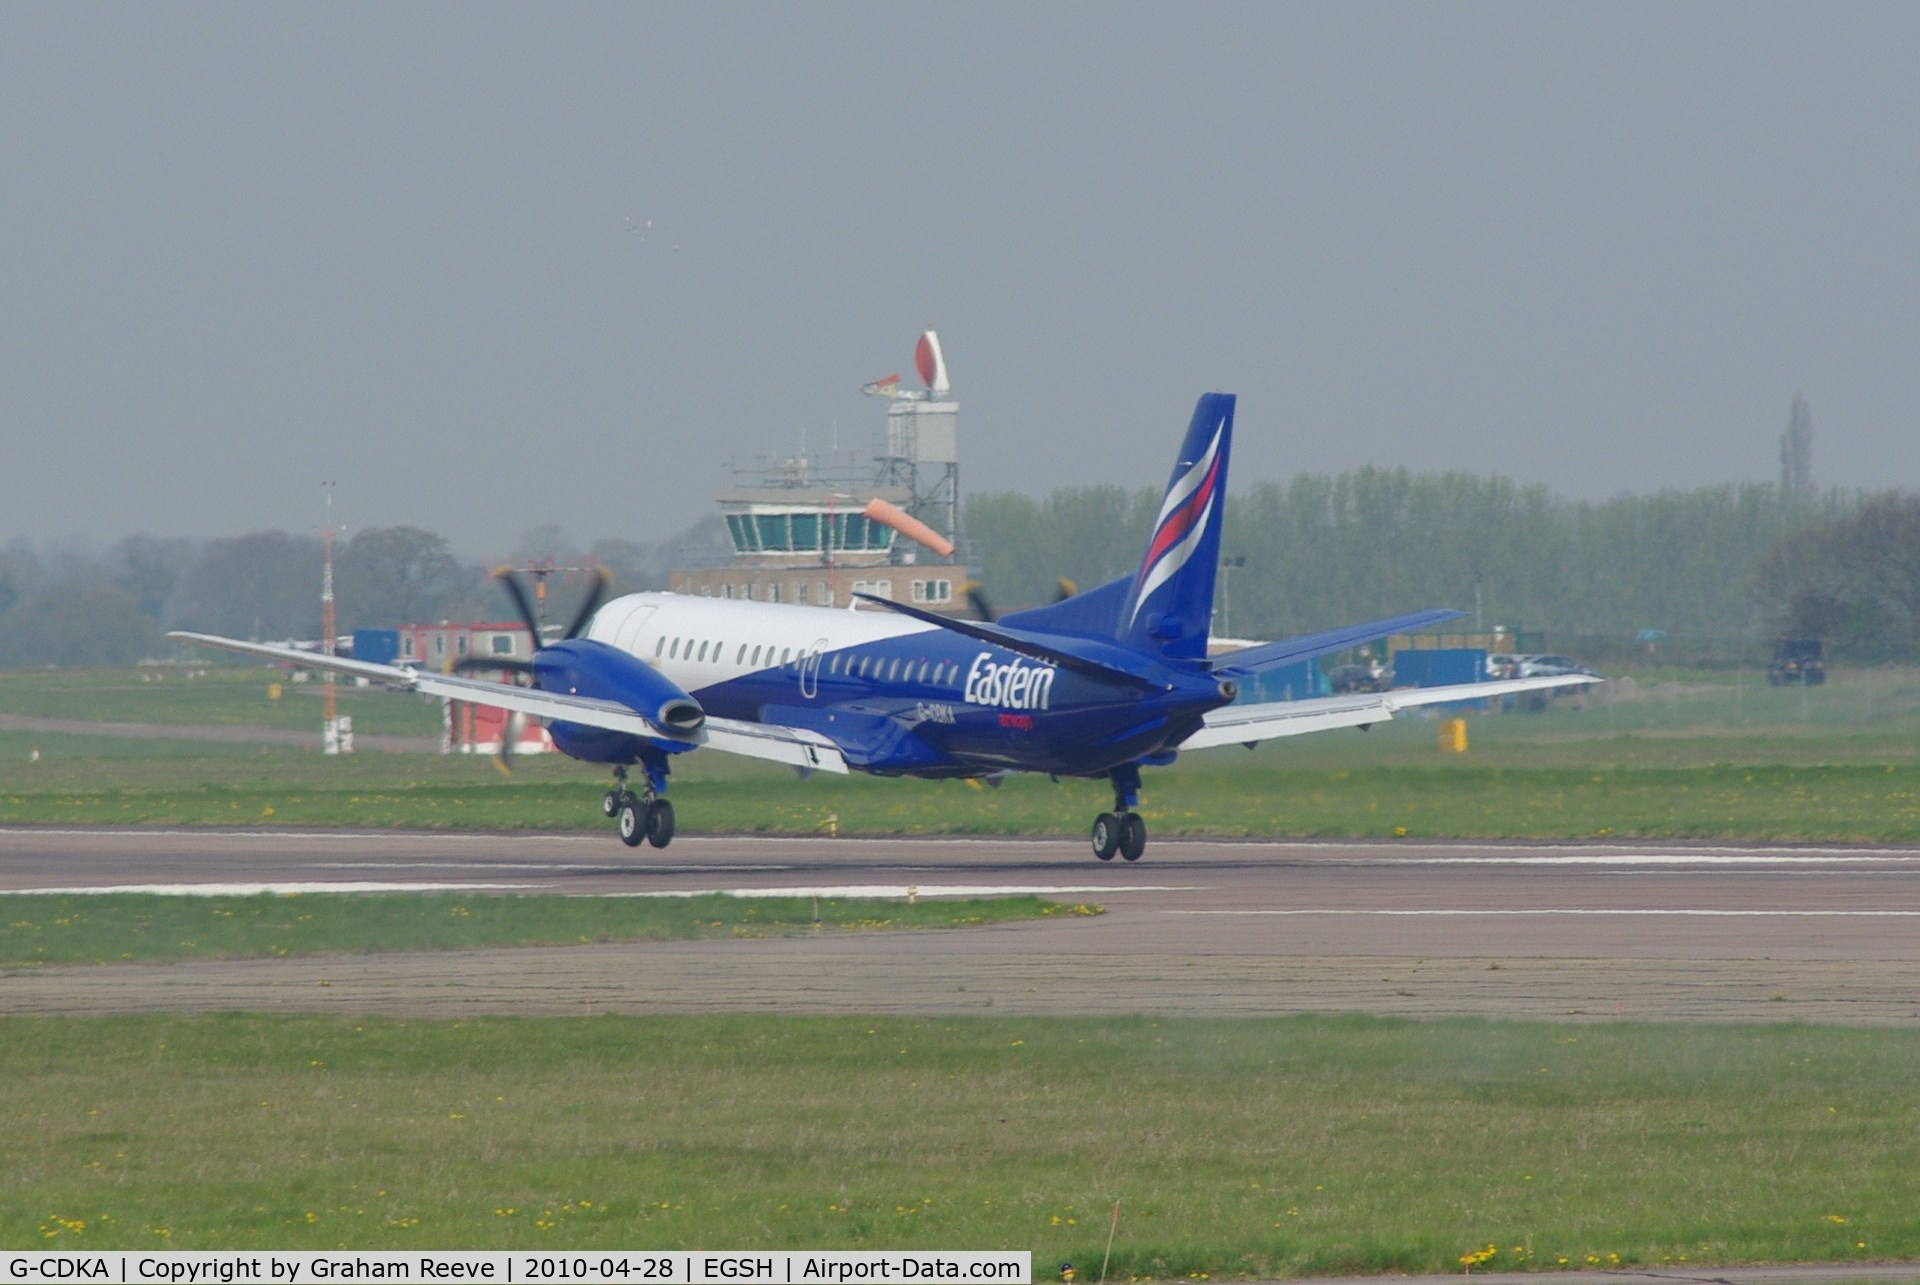 G-CDKA, 1993 Saab 2000 C/N 2000-006, Landing at Norwich.